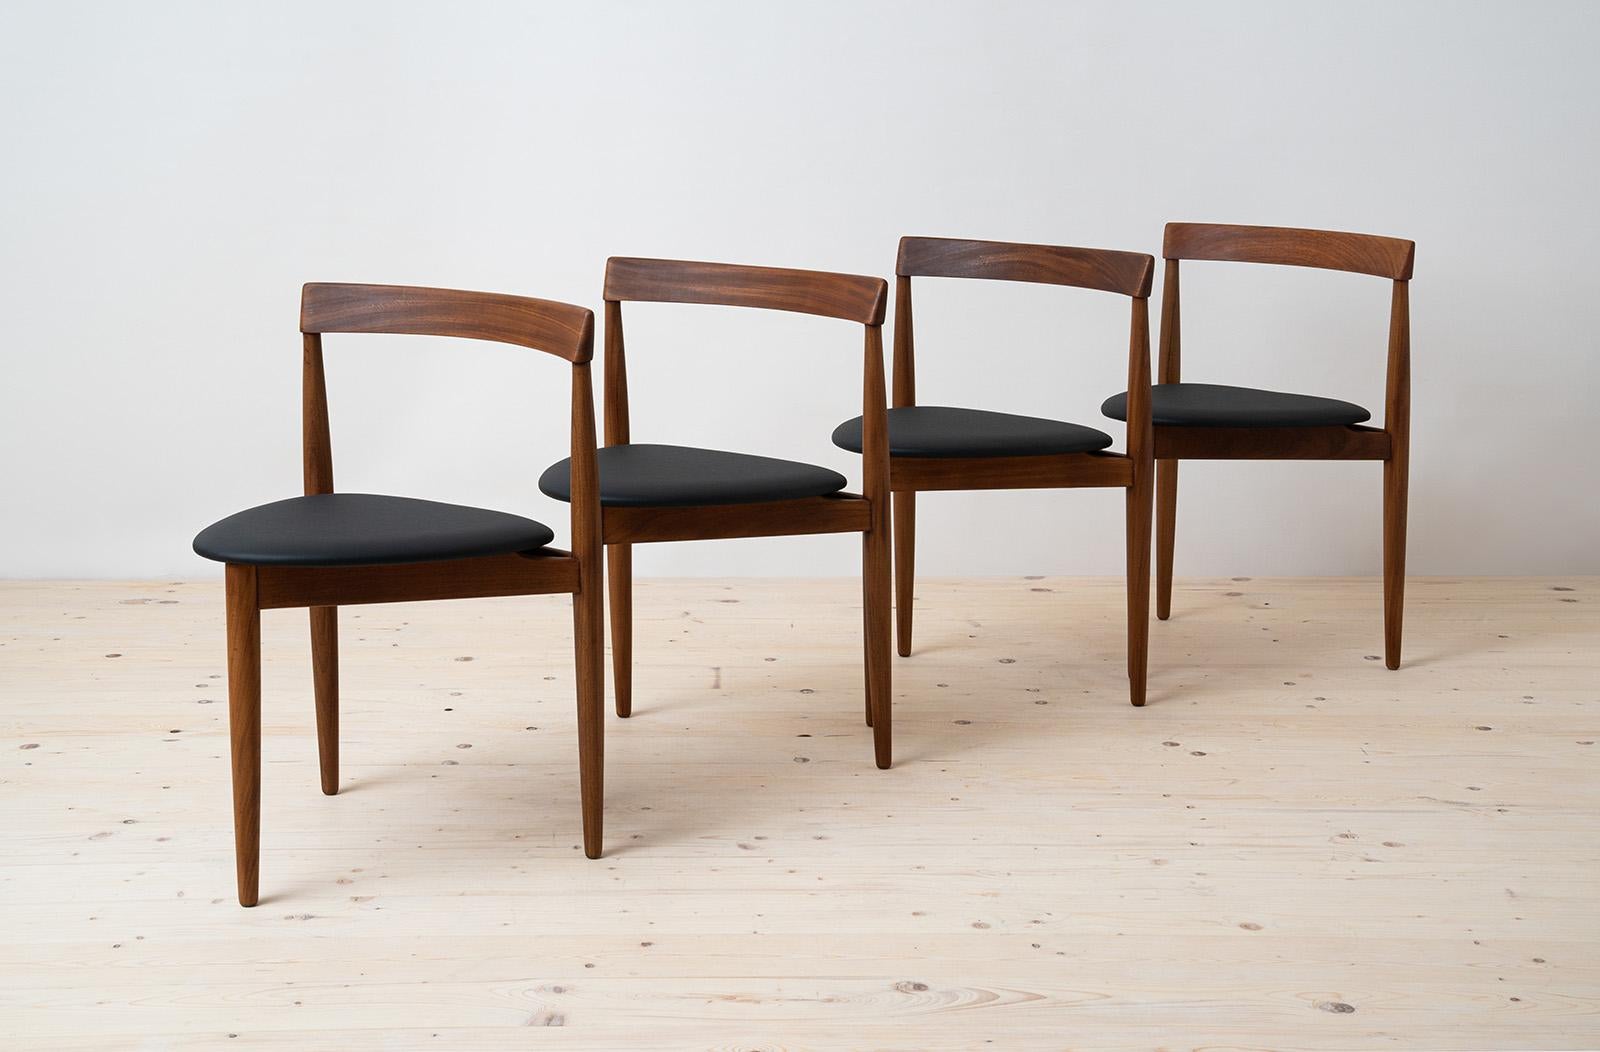 Esszimmer-Set aus Teakholz von Hans Olsen, 4 Stühle, runder Tisch, dänische Moderne, 1950er Jahre (Mitte des 20. Jahrhunderts)